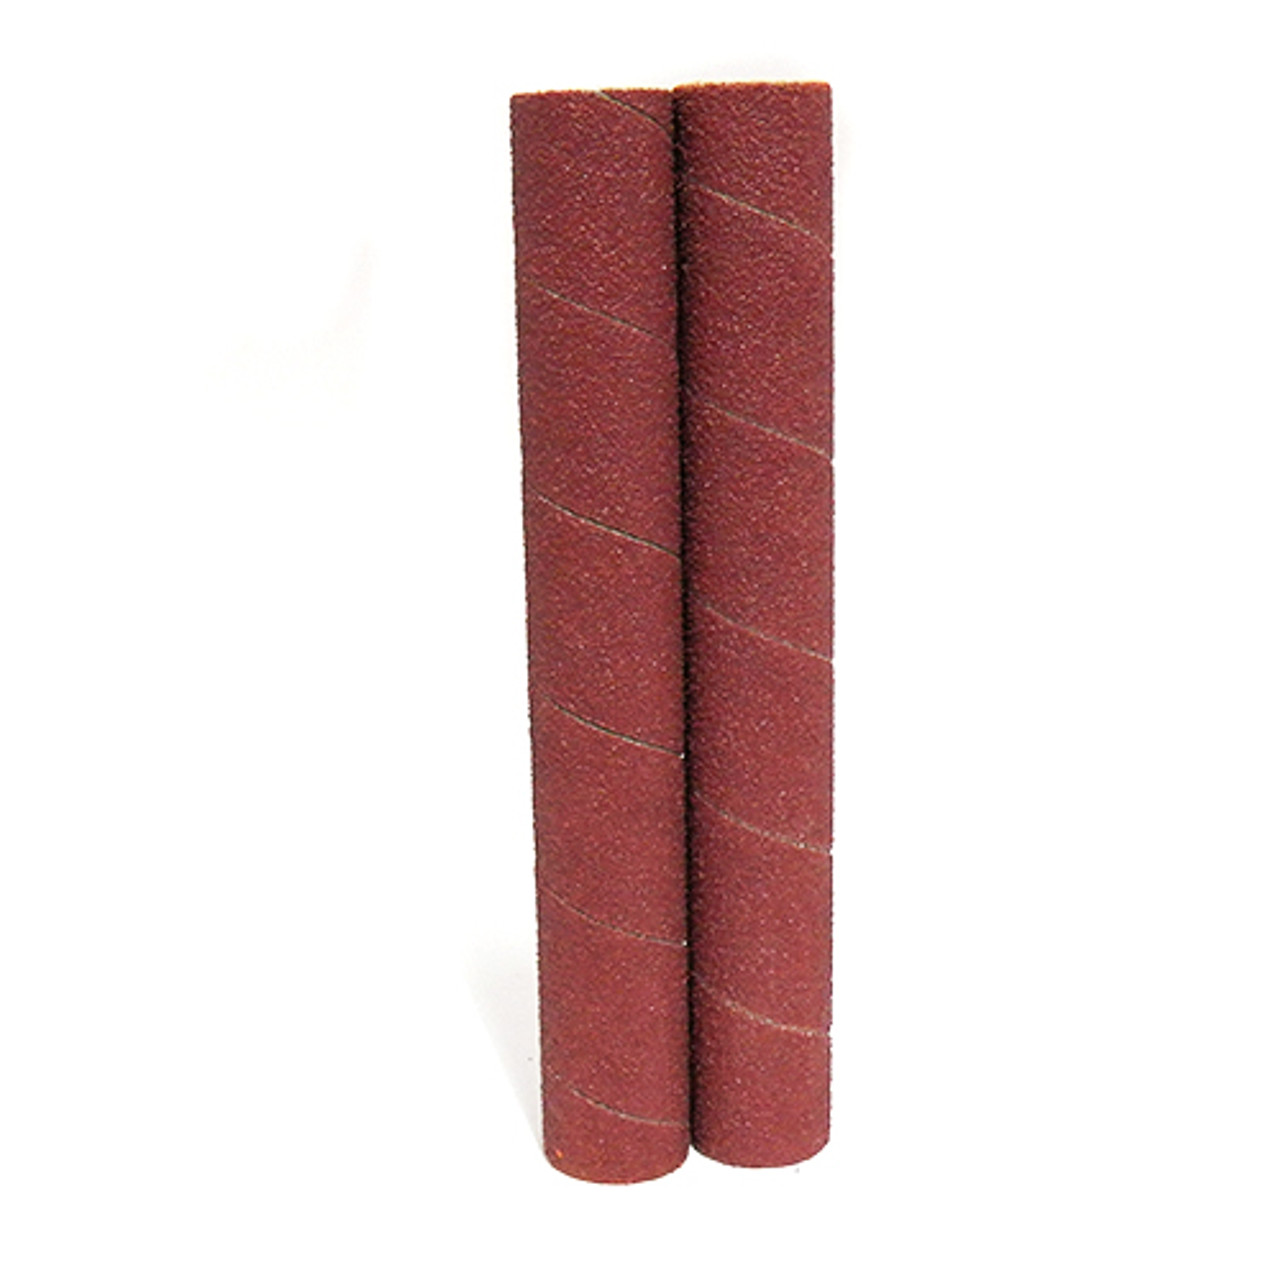 Klingspor Abrasives Aluminum Oxide Sanding Sleeves, 3/4"X 6" 100 Grit, 2pk